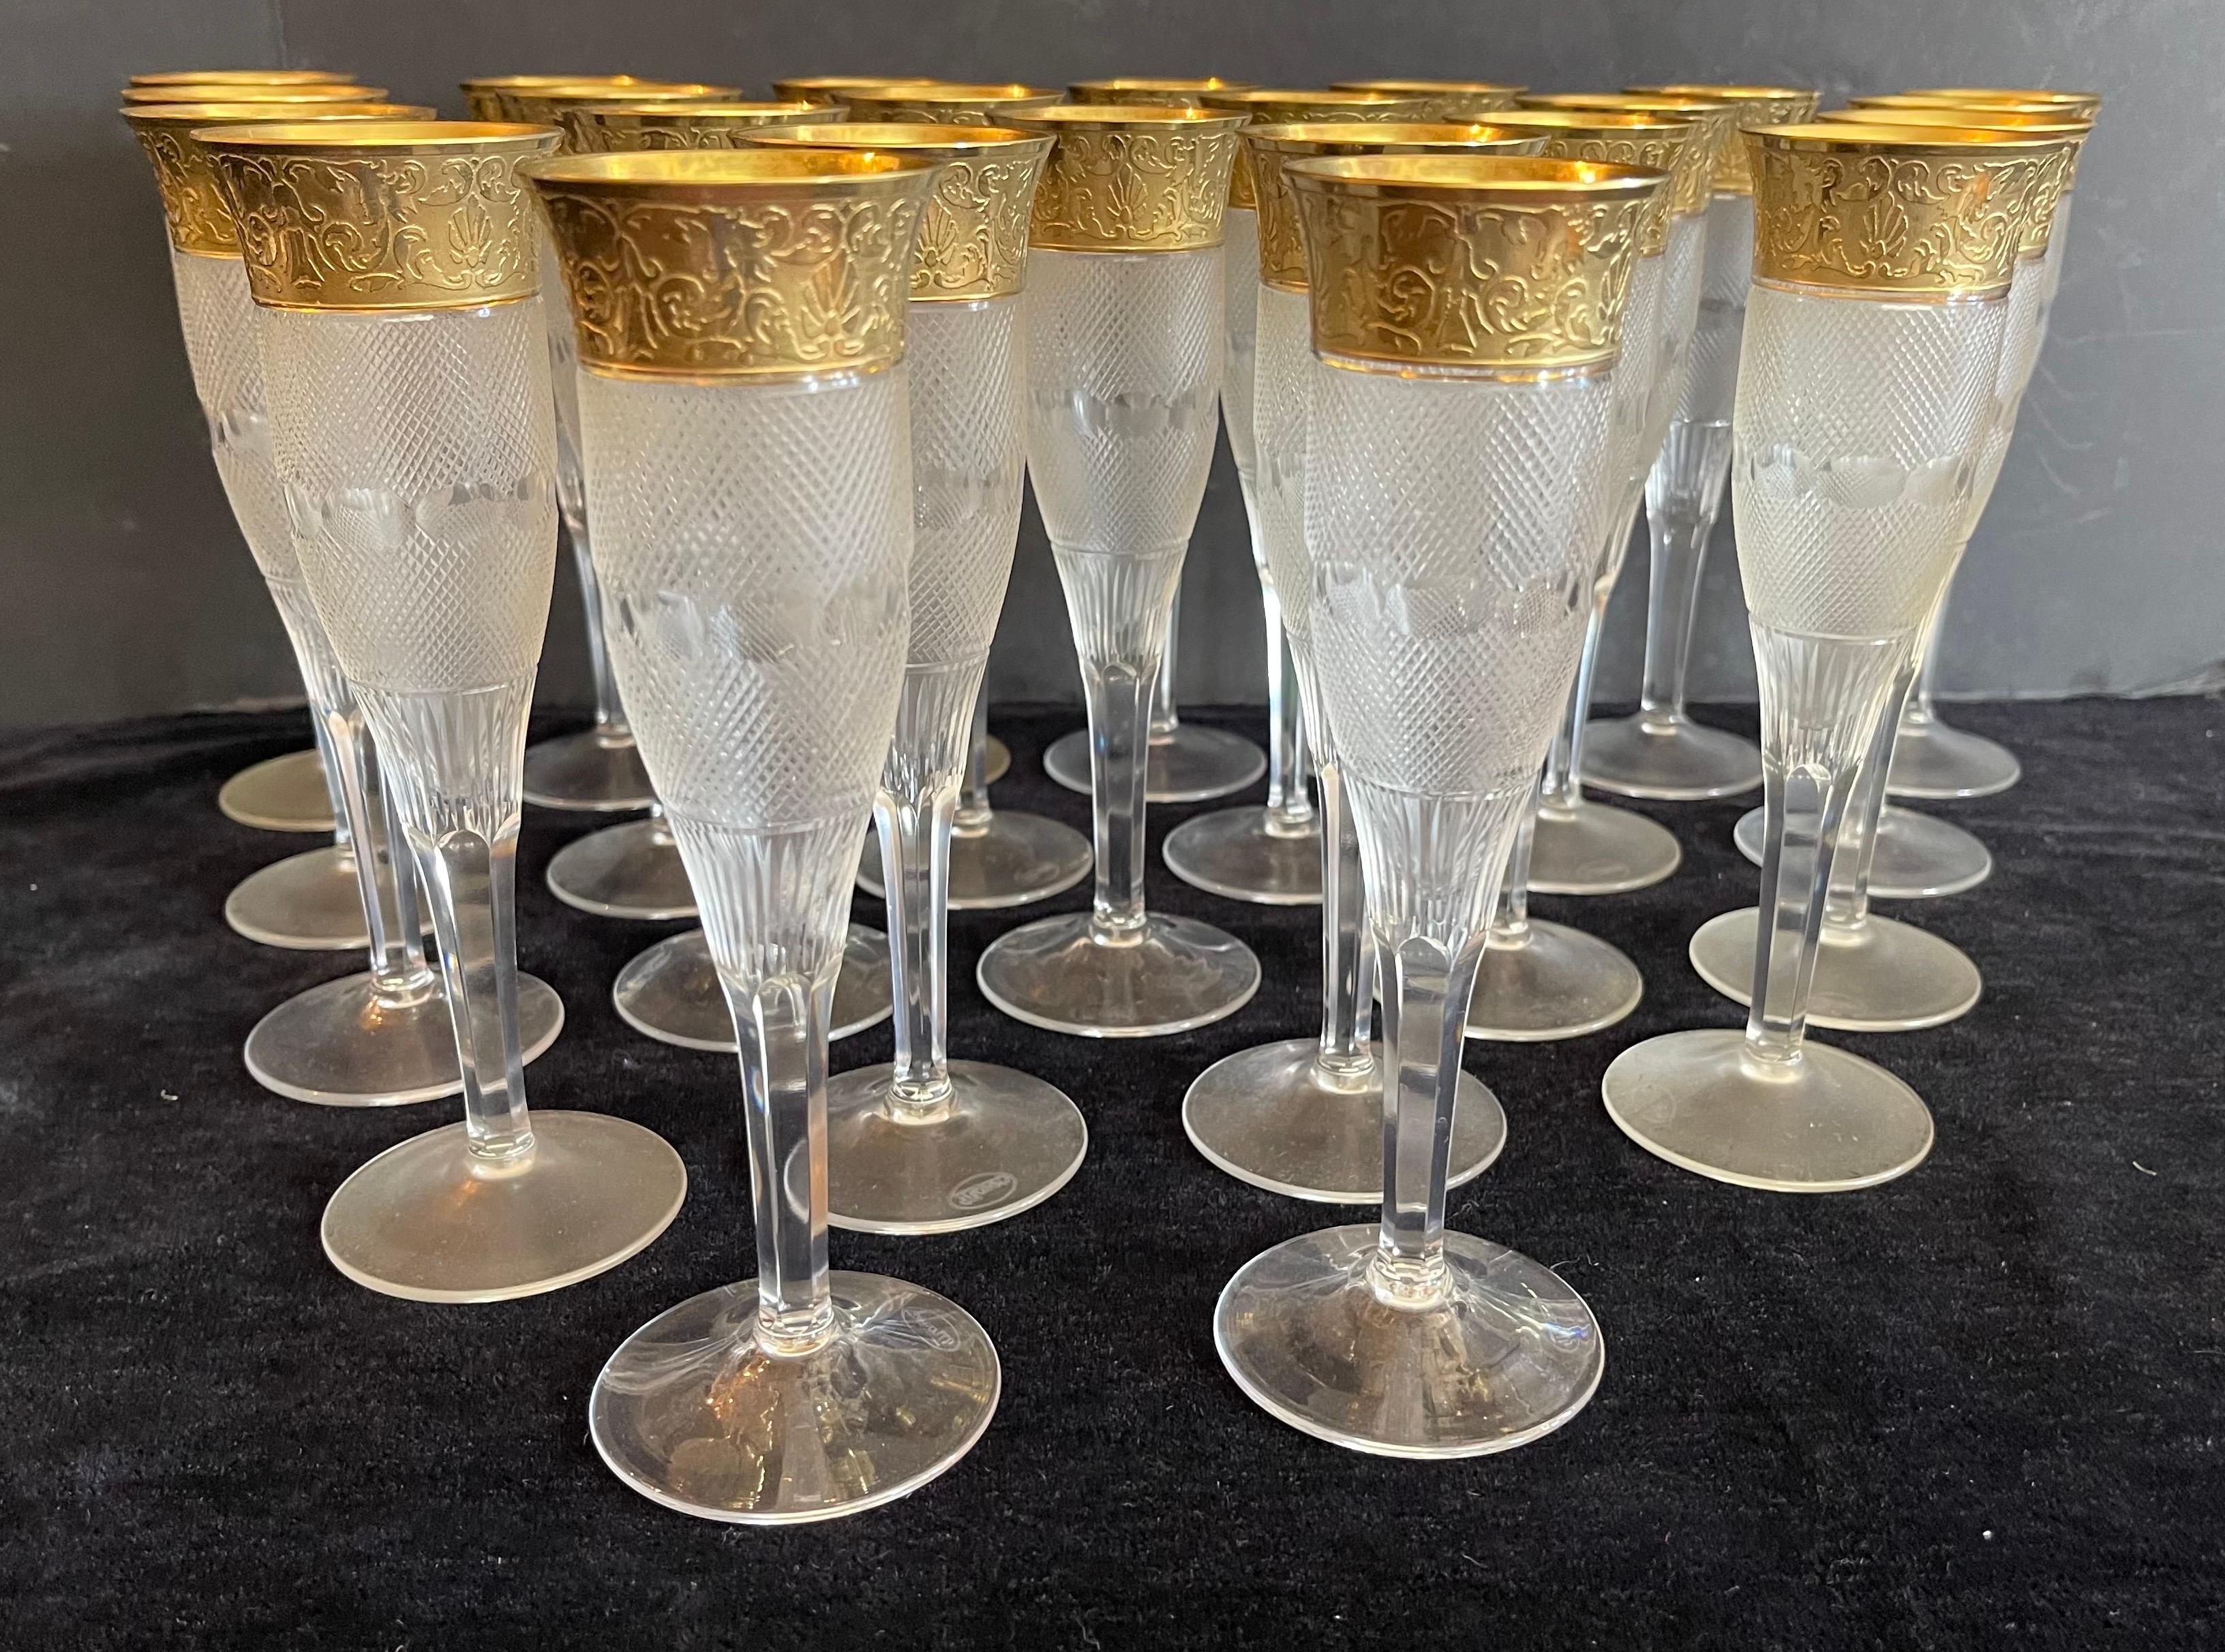 Merveilleux ensemble de 24 gobelets à champagne cannelés en cristal splendide de Moser et ornés d'une bordure en or 24K. Ce magnifique modèle a été conçu à l'origine en 1911 et est rapidement devenu le Magnum Opus des modèles de Moser. Le corps en